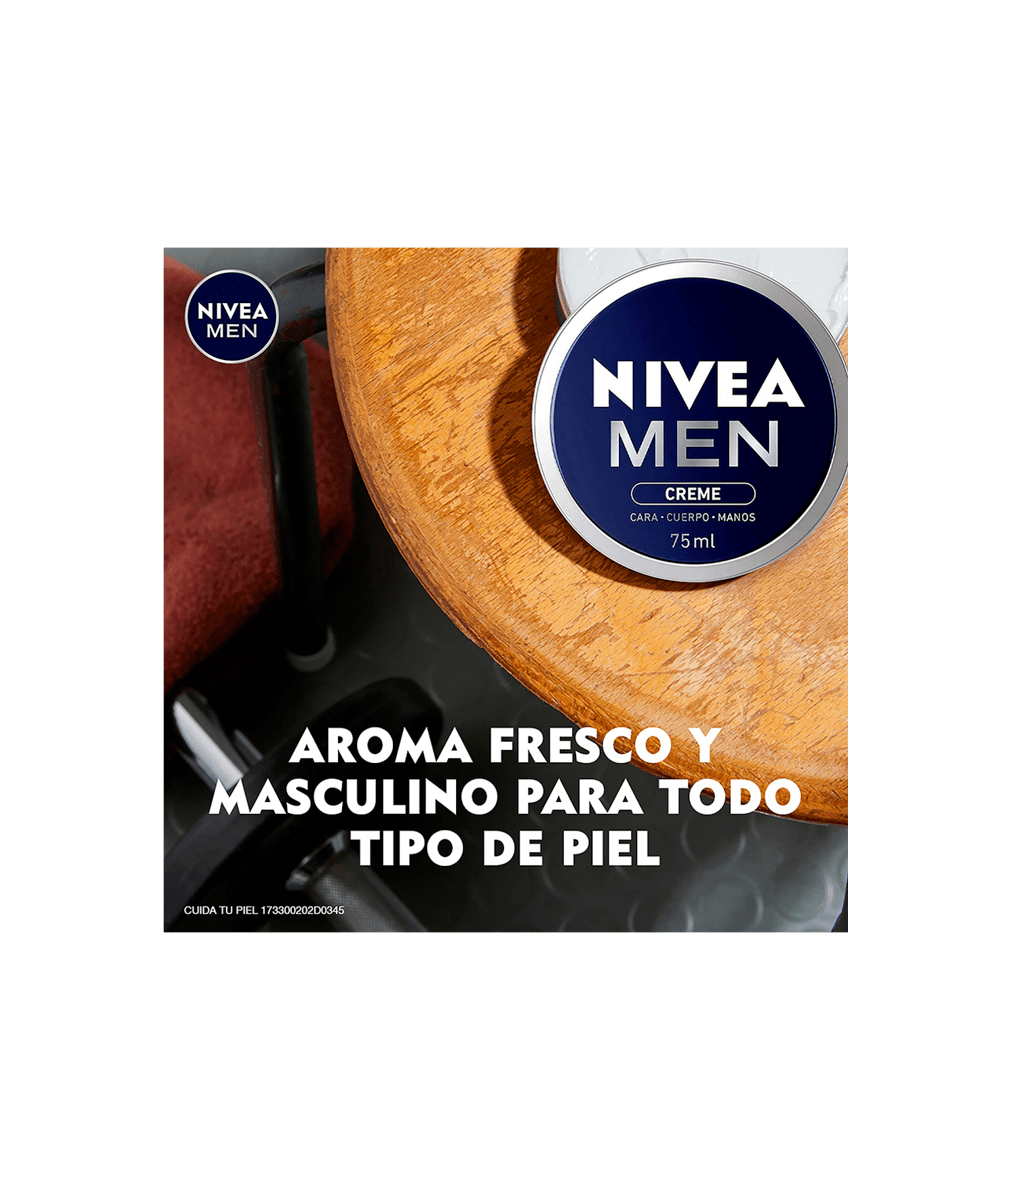 Nivea Men Creme Crema Humectante Multipropósito, 75ml